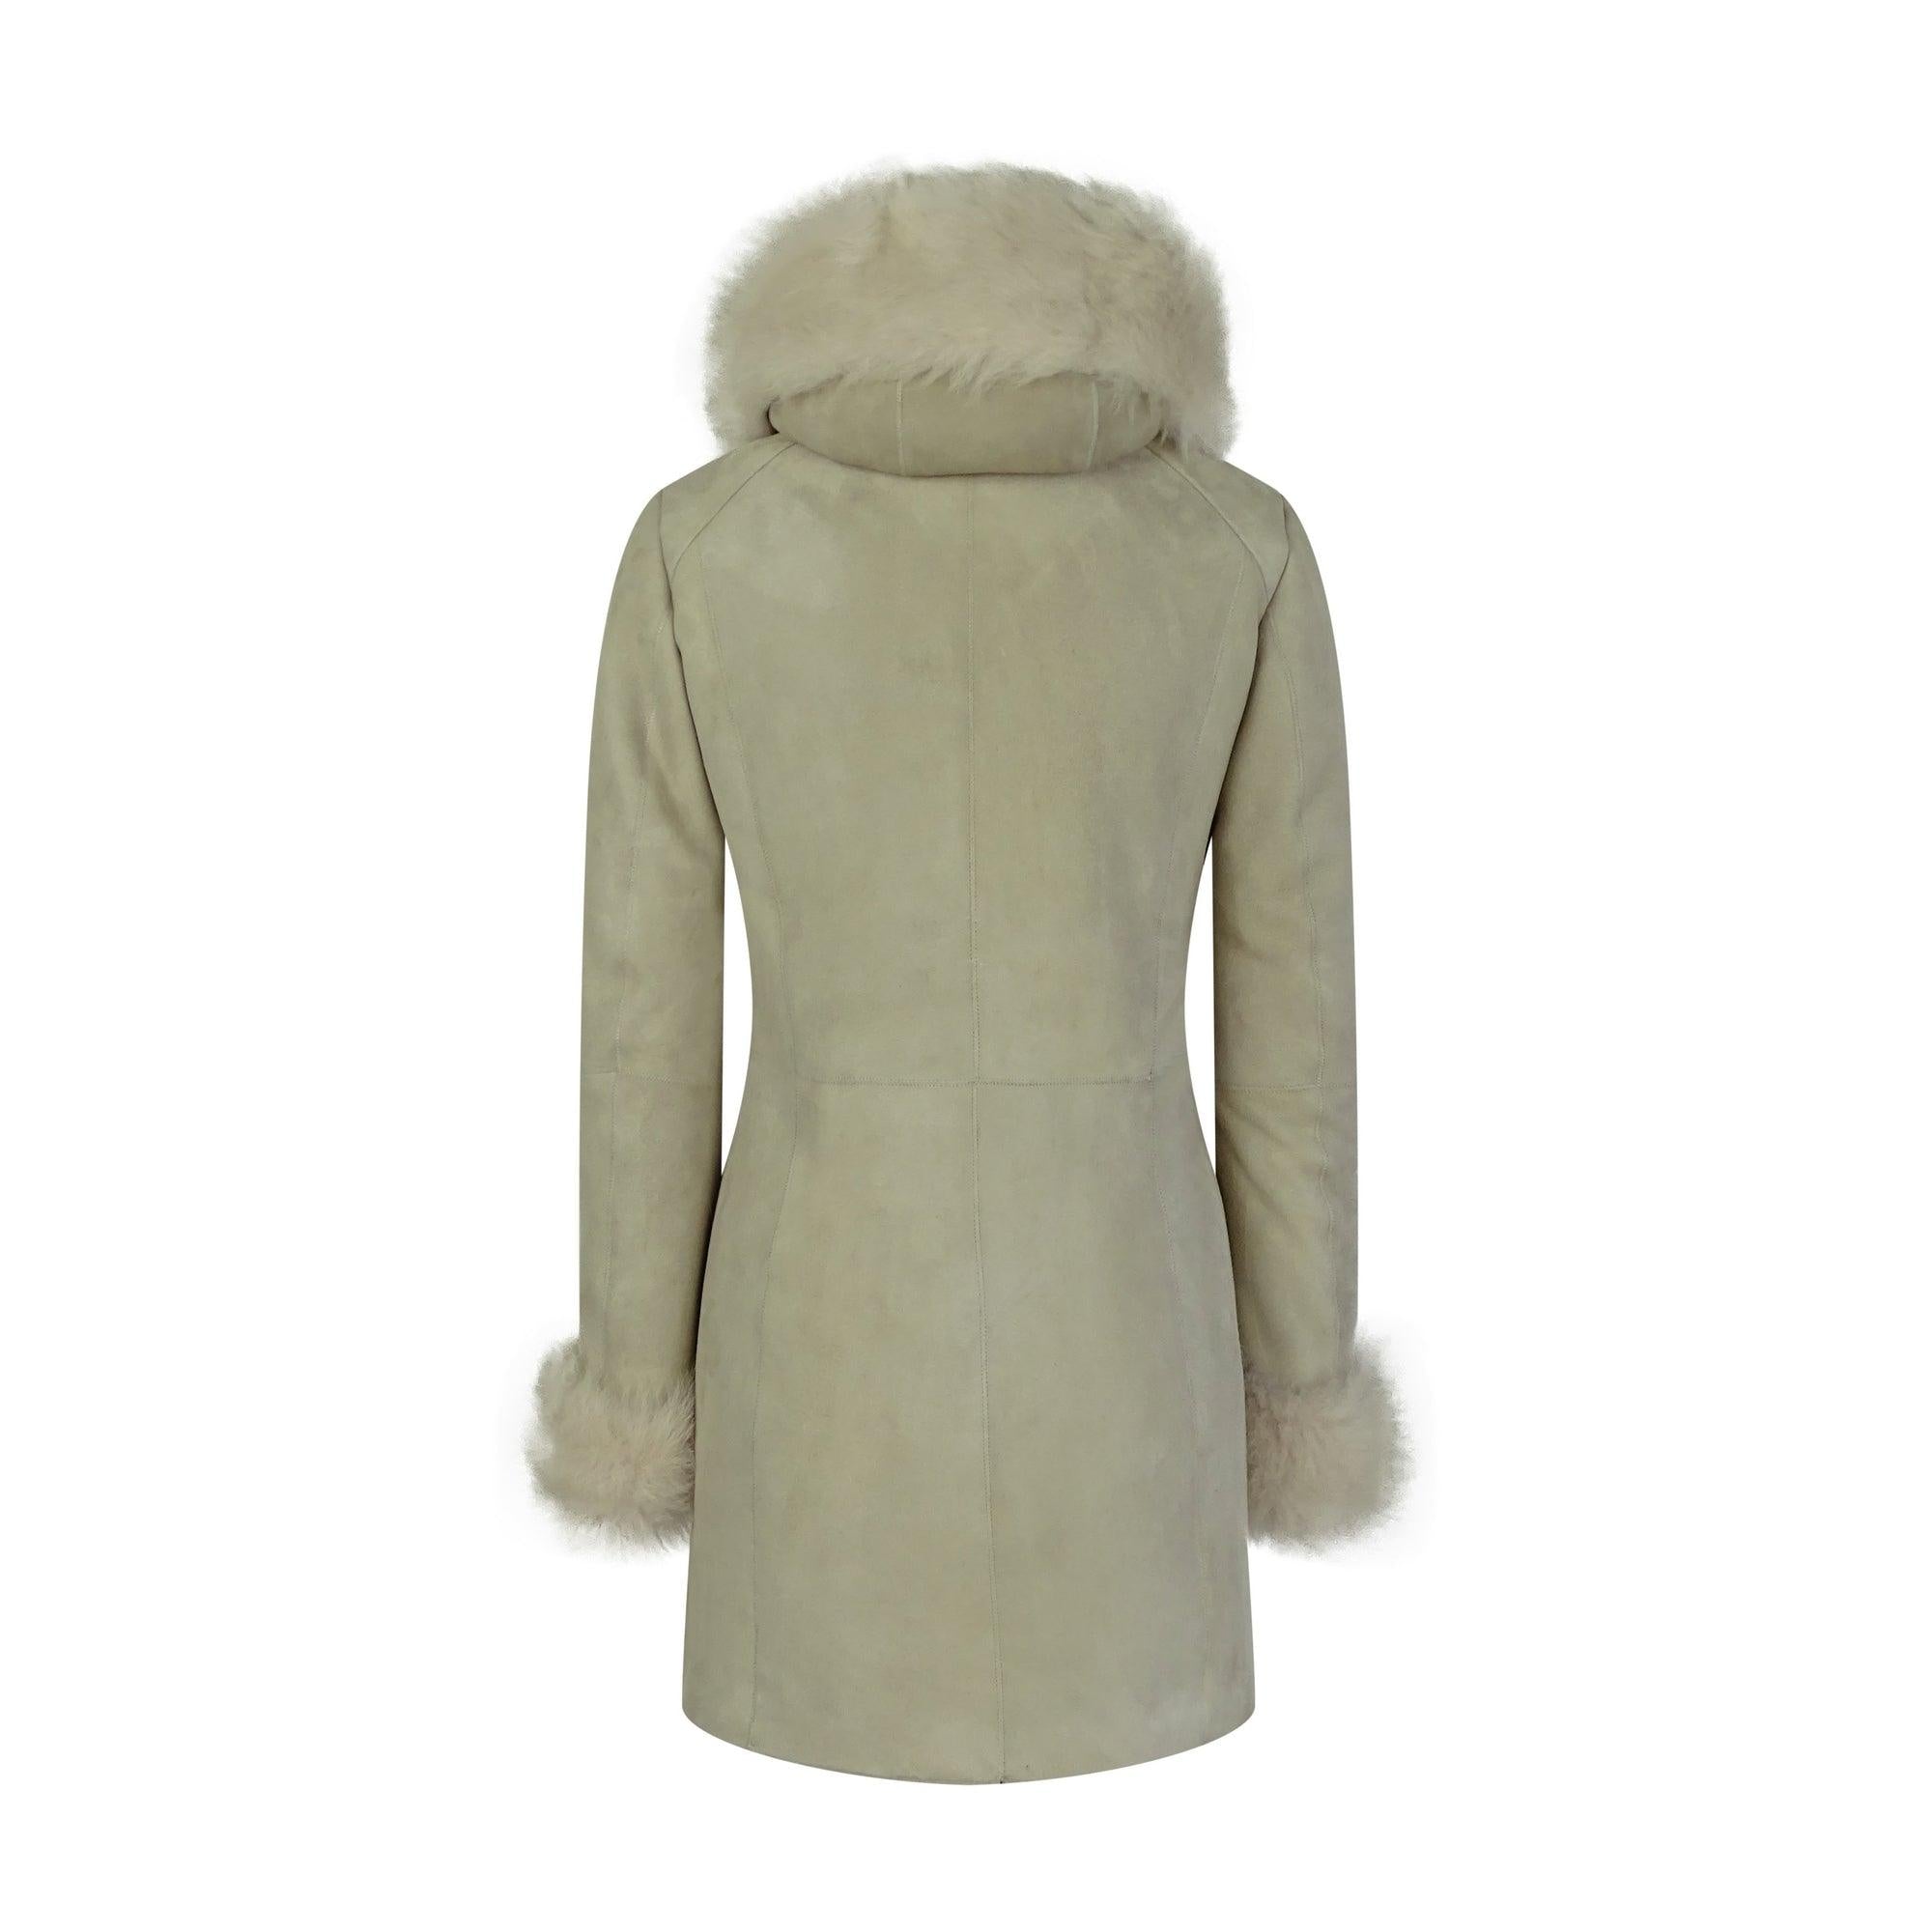 Women's Cream Long Toscana Sheepskin Coat with Hood-TruClothing